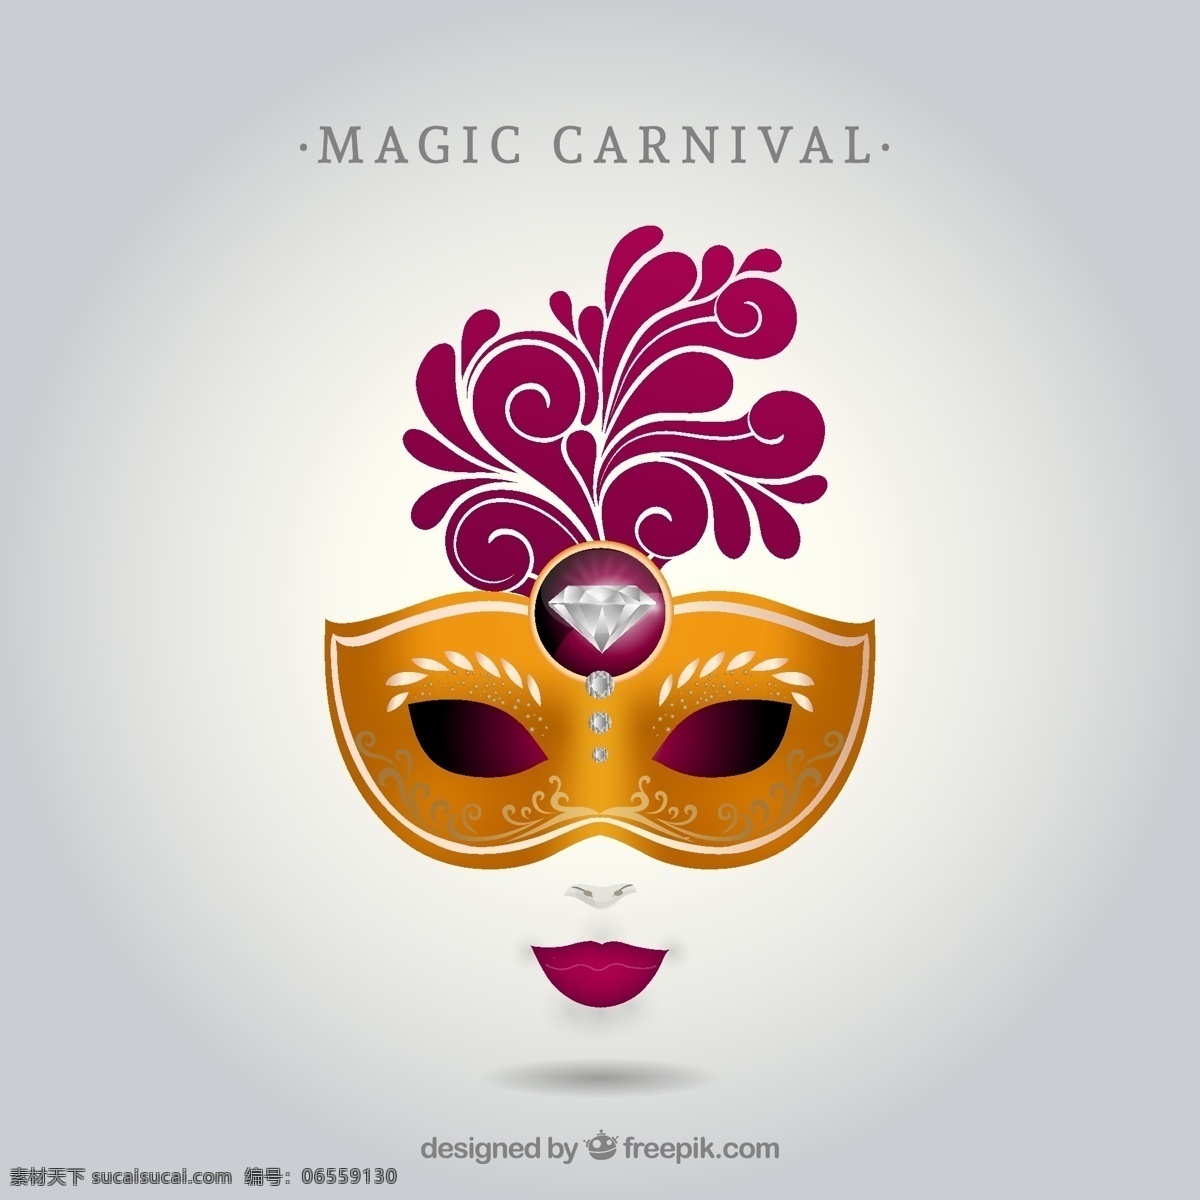 狂欢节 面具 插图 钻石 嘉年华 庆祝活动 巴西 庆祝 服装 狂欢 鹅肝 神秘 威尼斯人 伪装